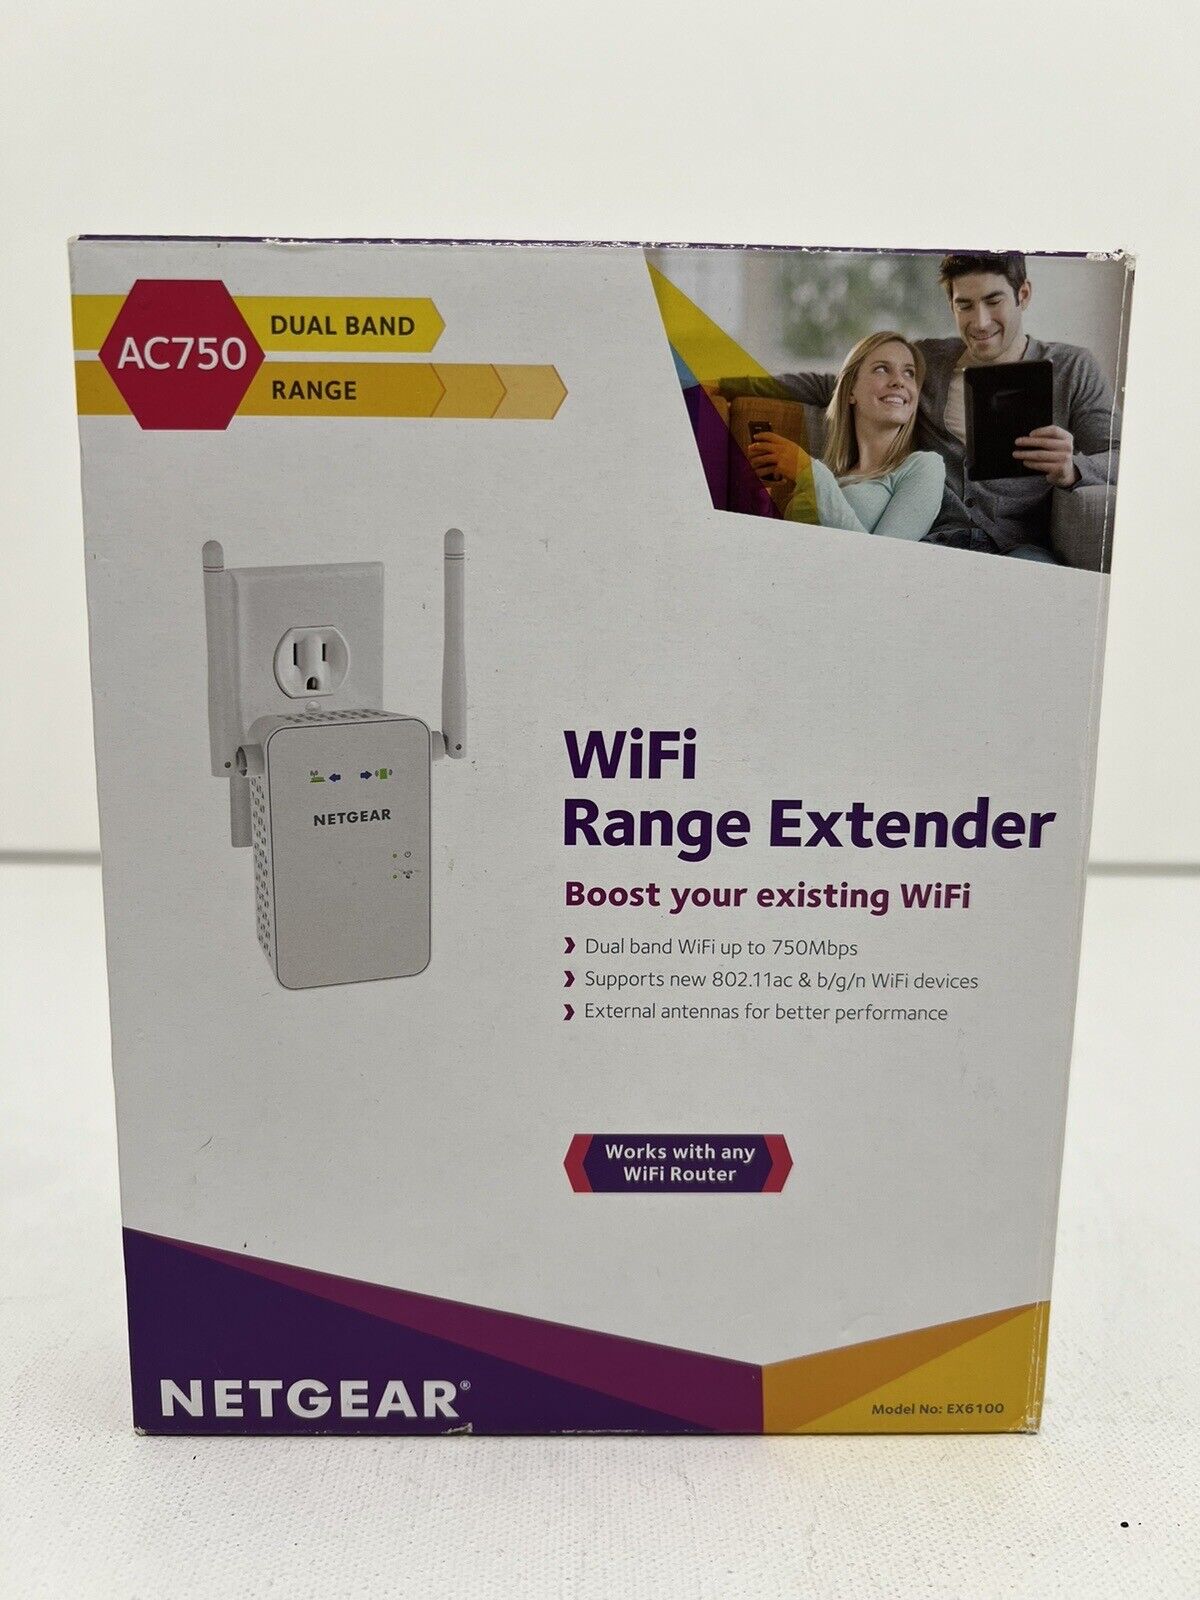 NOB NETGEAR AC1200 Wi-Fi Range Extender - EX6120